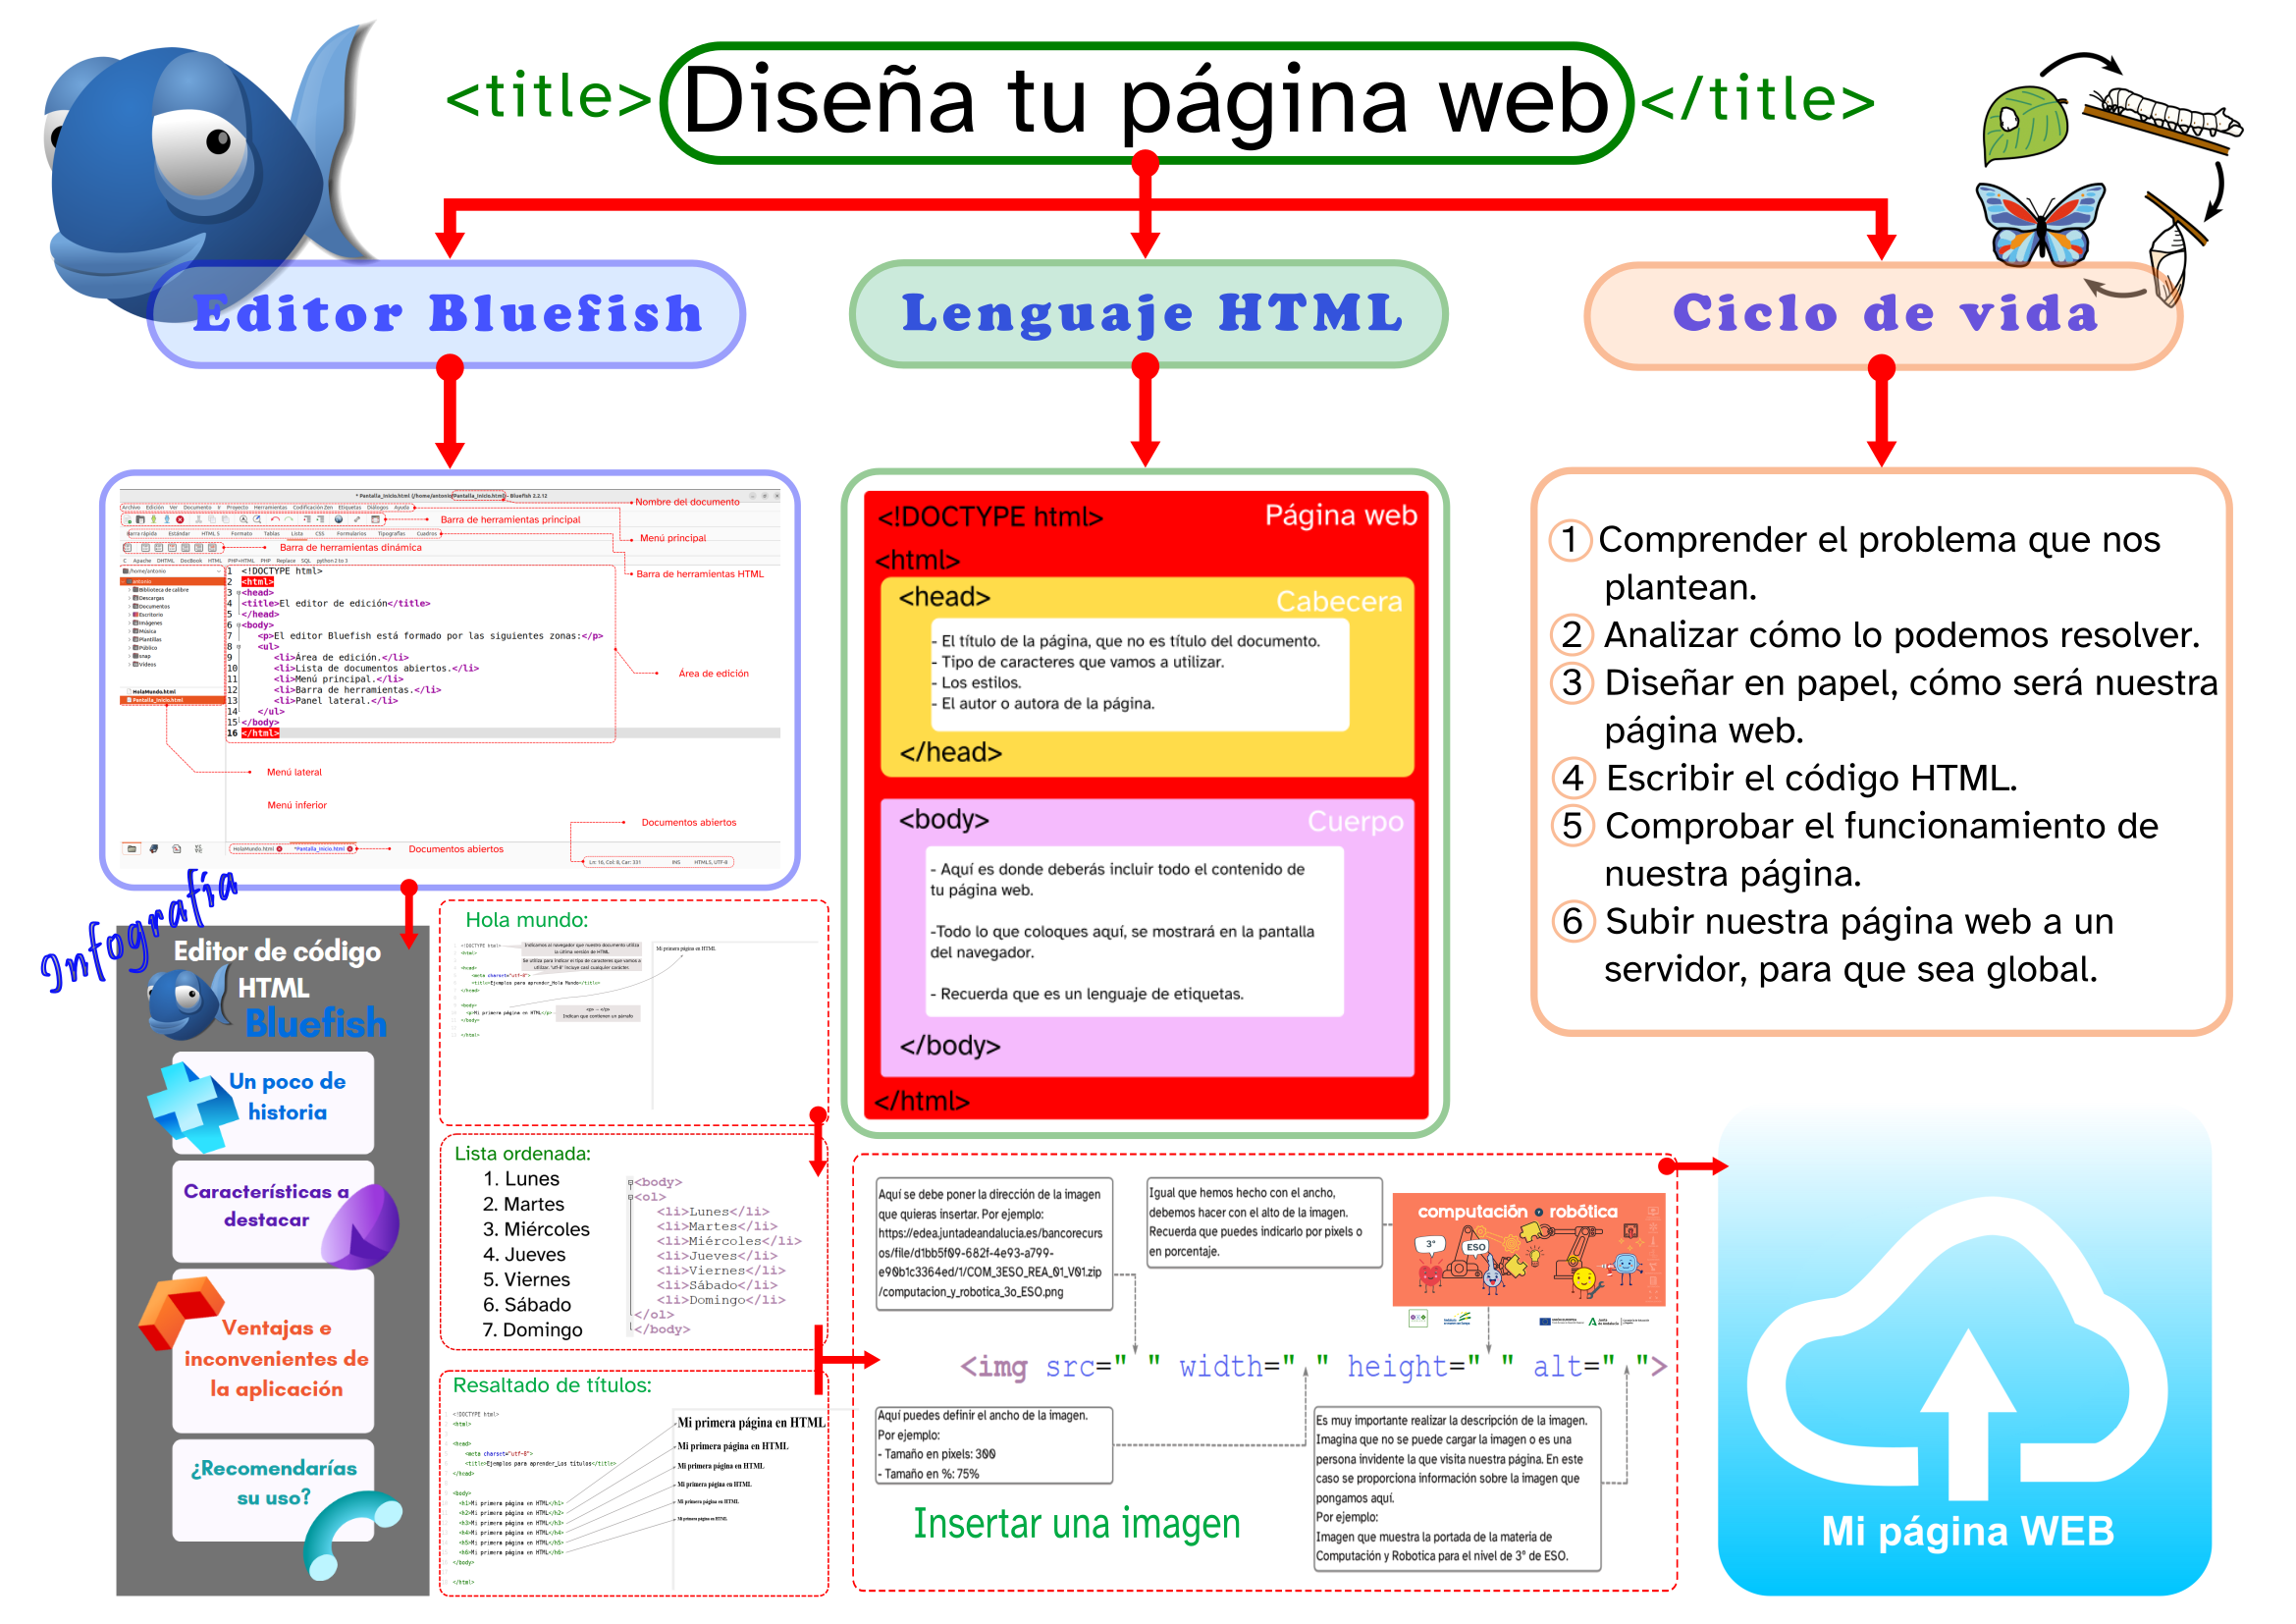 Imagen que muestra el esquema final del documento. Se repasan aspectos relacionados con el ciclo de vida de una página web, el editor Bluefish y el lenguaje HTML.